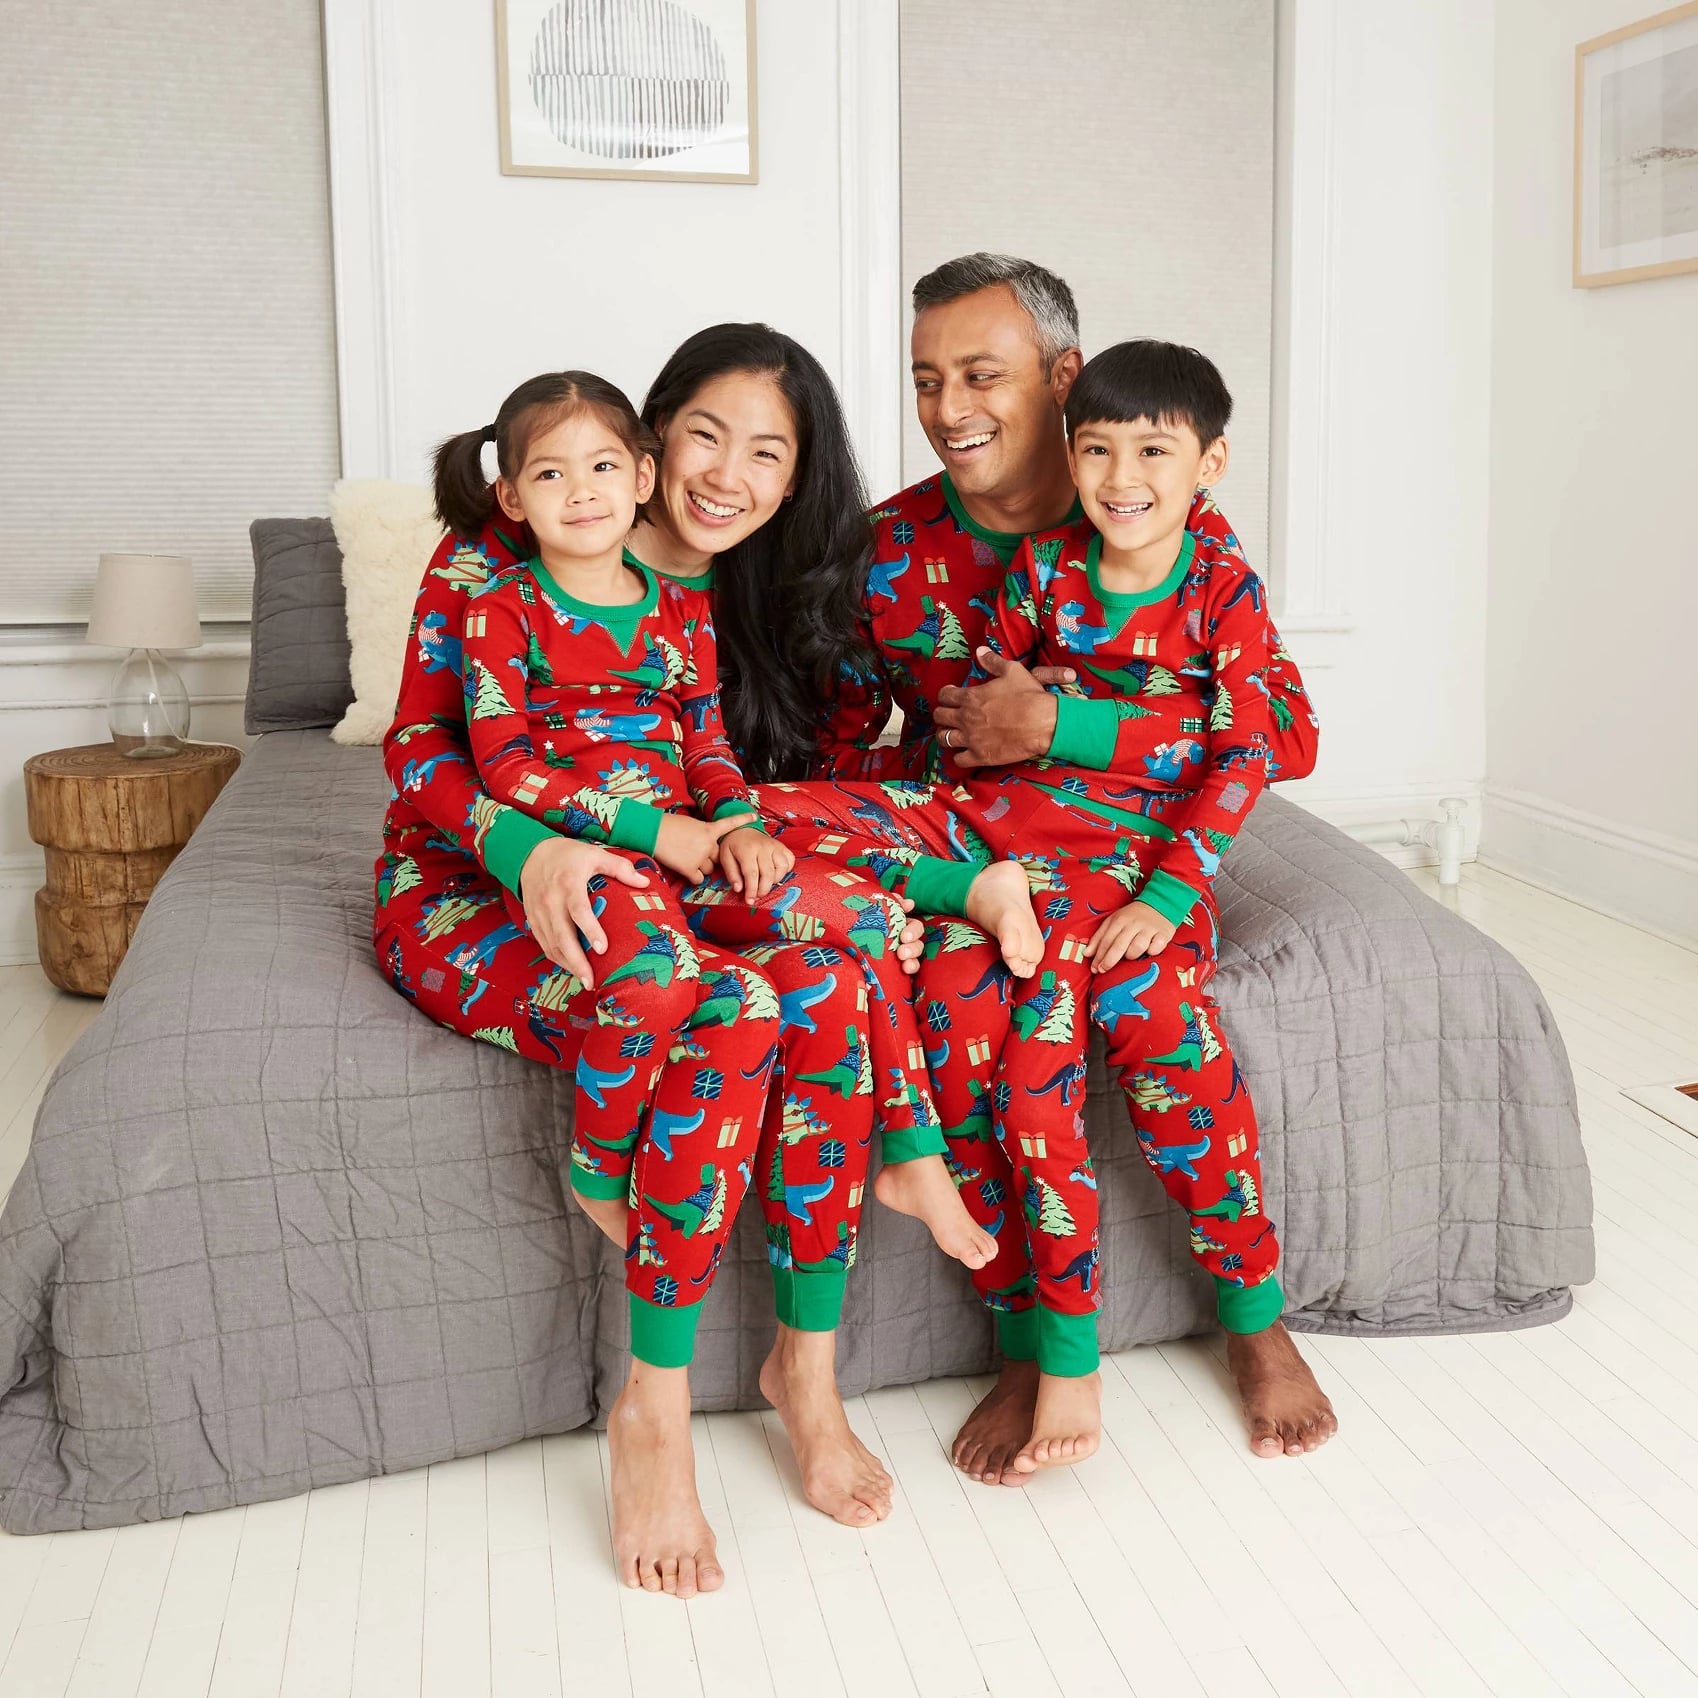 Toddler Christmas PJ Christmas Pajamas Photo Shoot Matching Christmas Pajamas Family Christmas Christmas Morning Kids Christmas PJ/'s